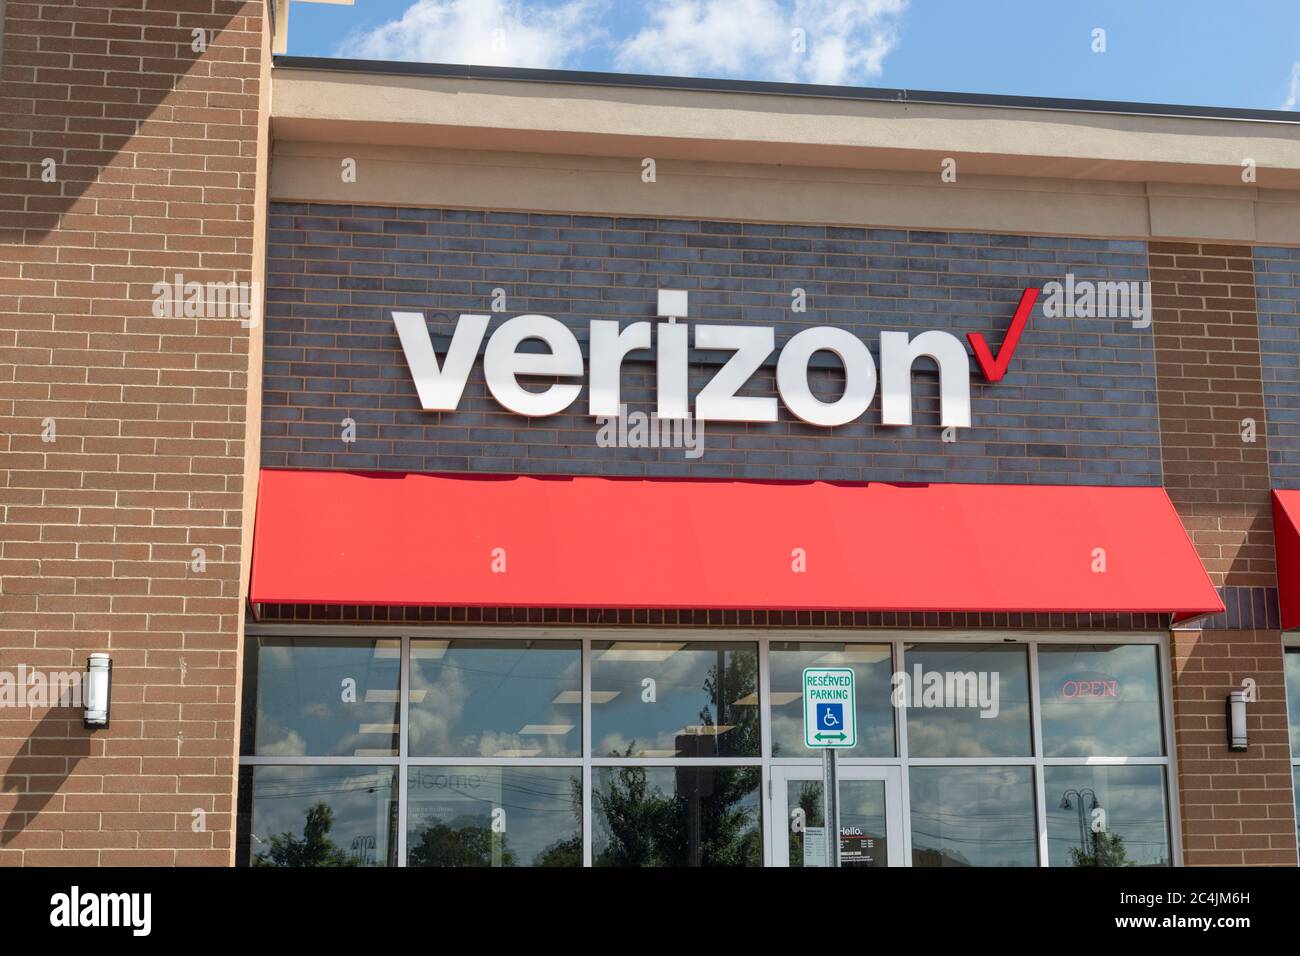 Westfield - Circa Juni 2020: Verizon Wireless Retail Location. Verizon liefert drahtlose Glasfaserverbindungen mit hoher Kapazität und 5G-Kommunikation. Stockfoto